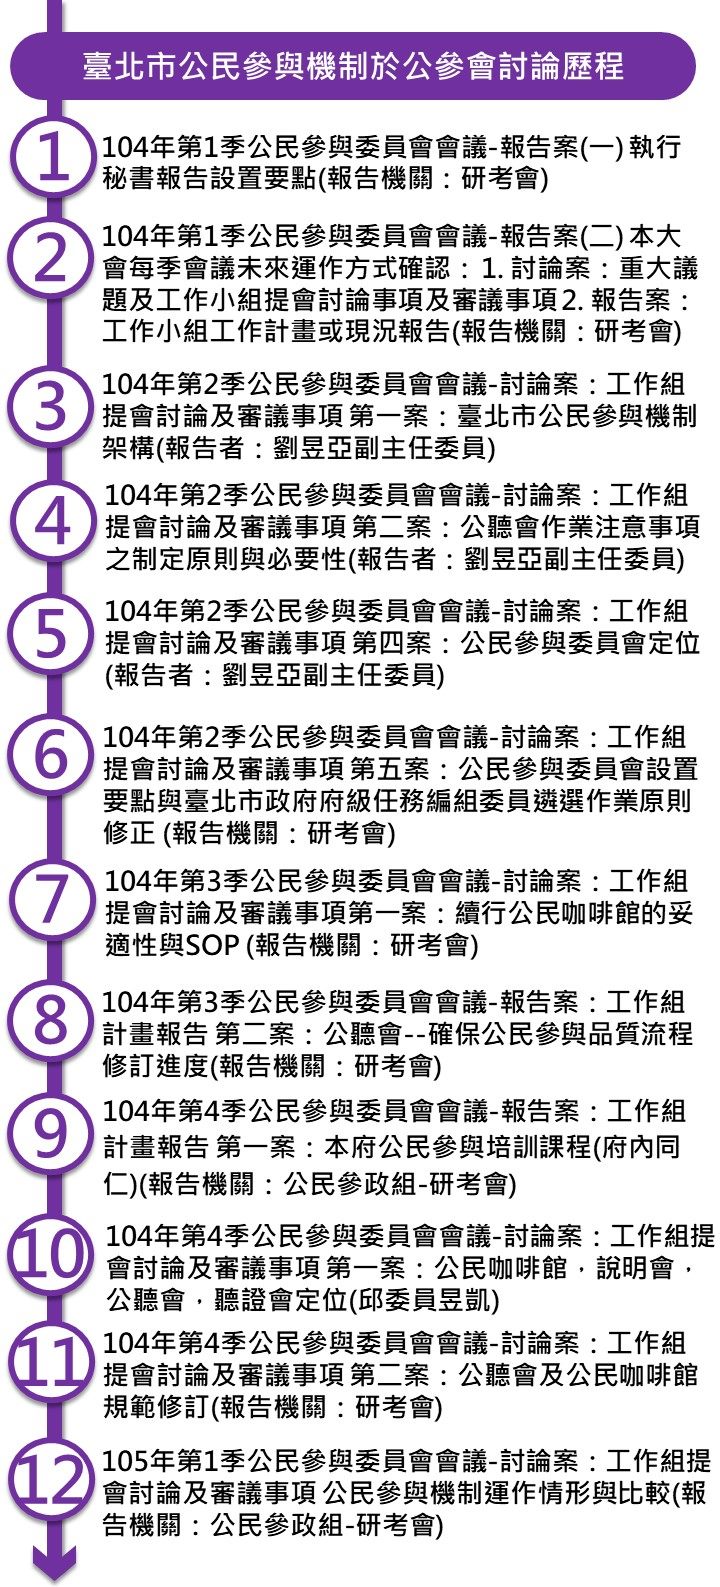 臺北市公民參與機制包含公參會設置要點、公聽會、聽證會等機制定位陸續於公參會討論，逐步完善。